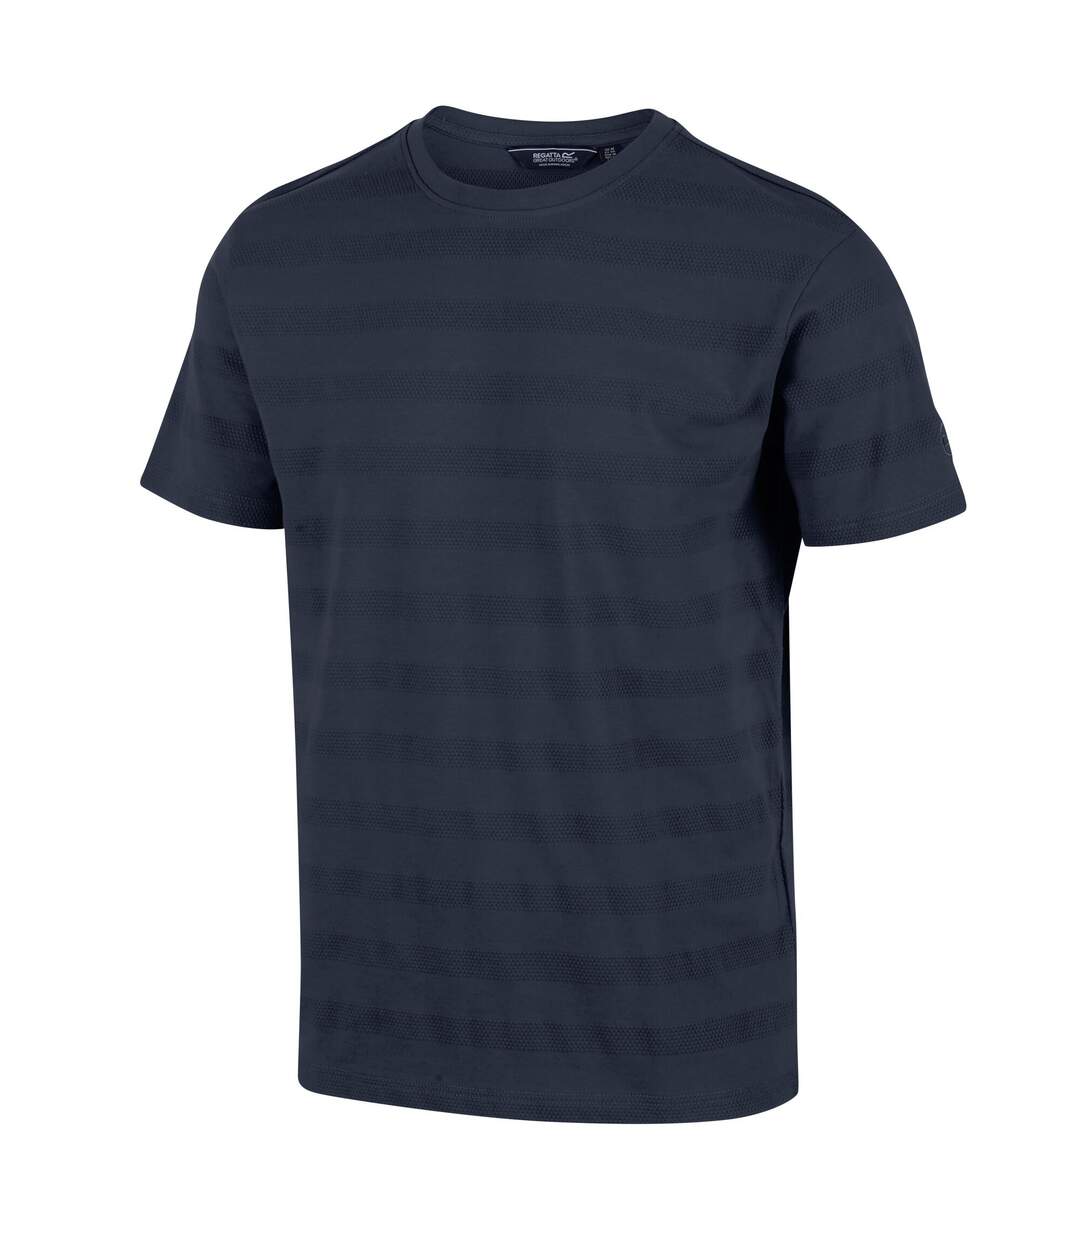 Regatta - T-shirt PRESTYN - Homme (Bleu marine) - UTRG7310